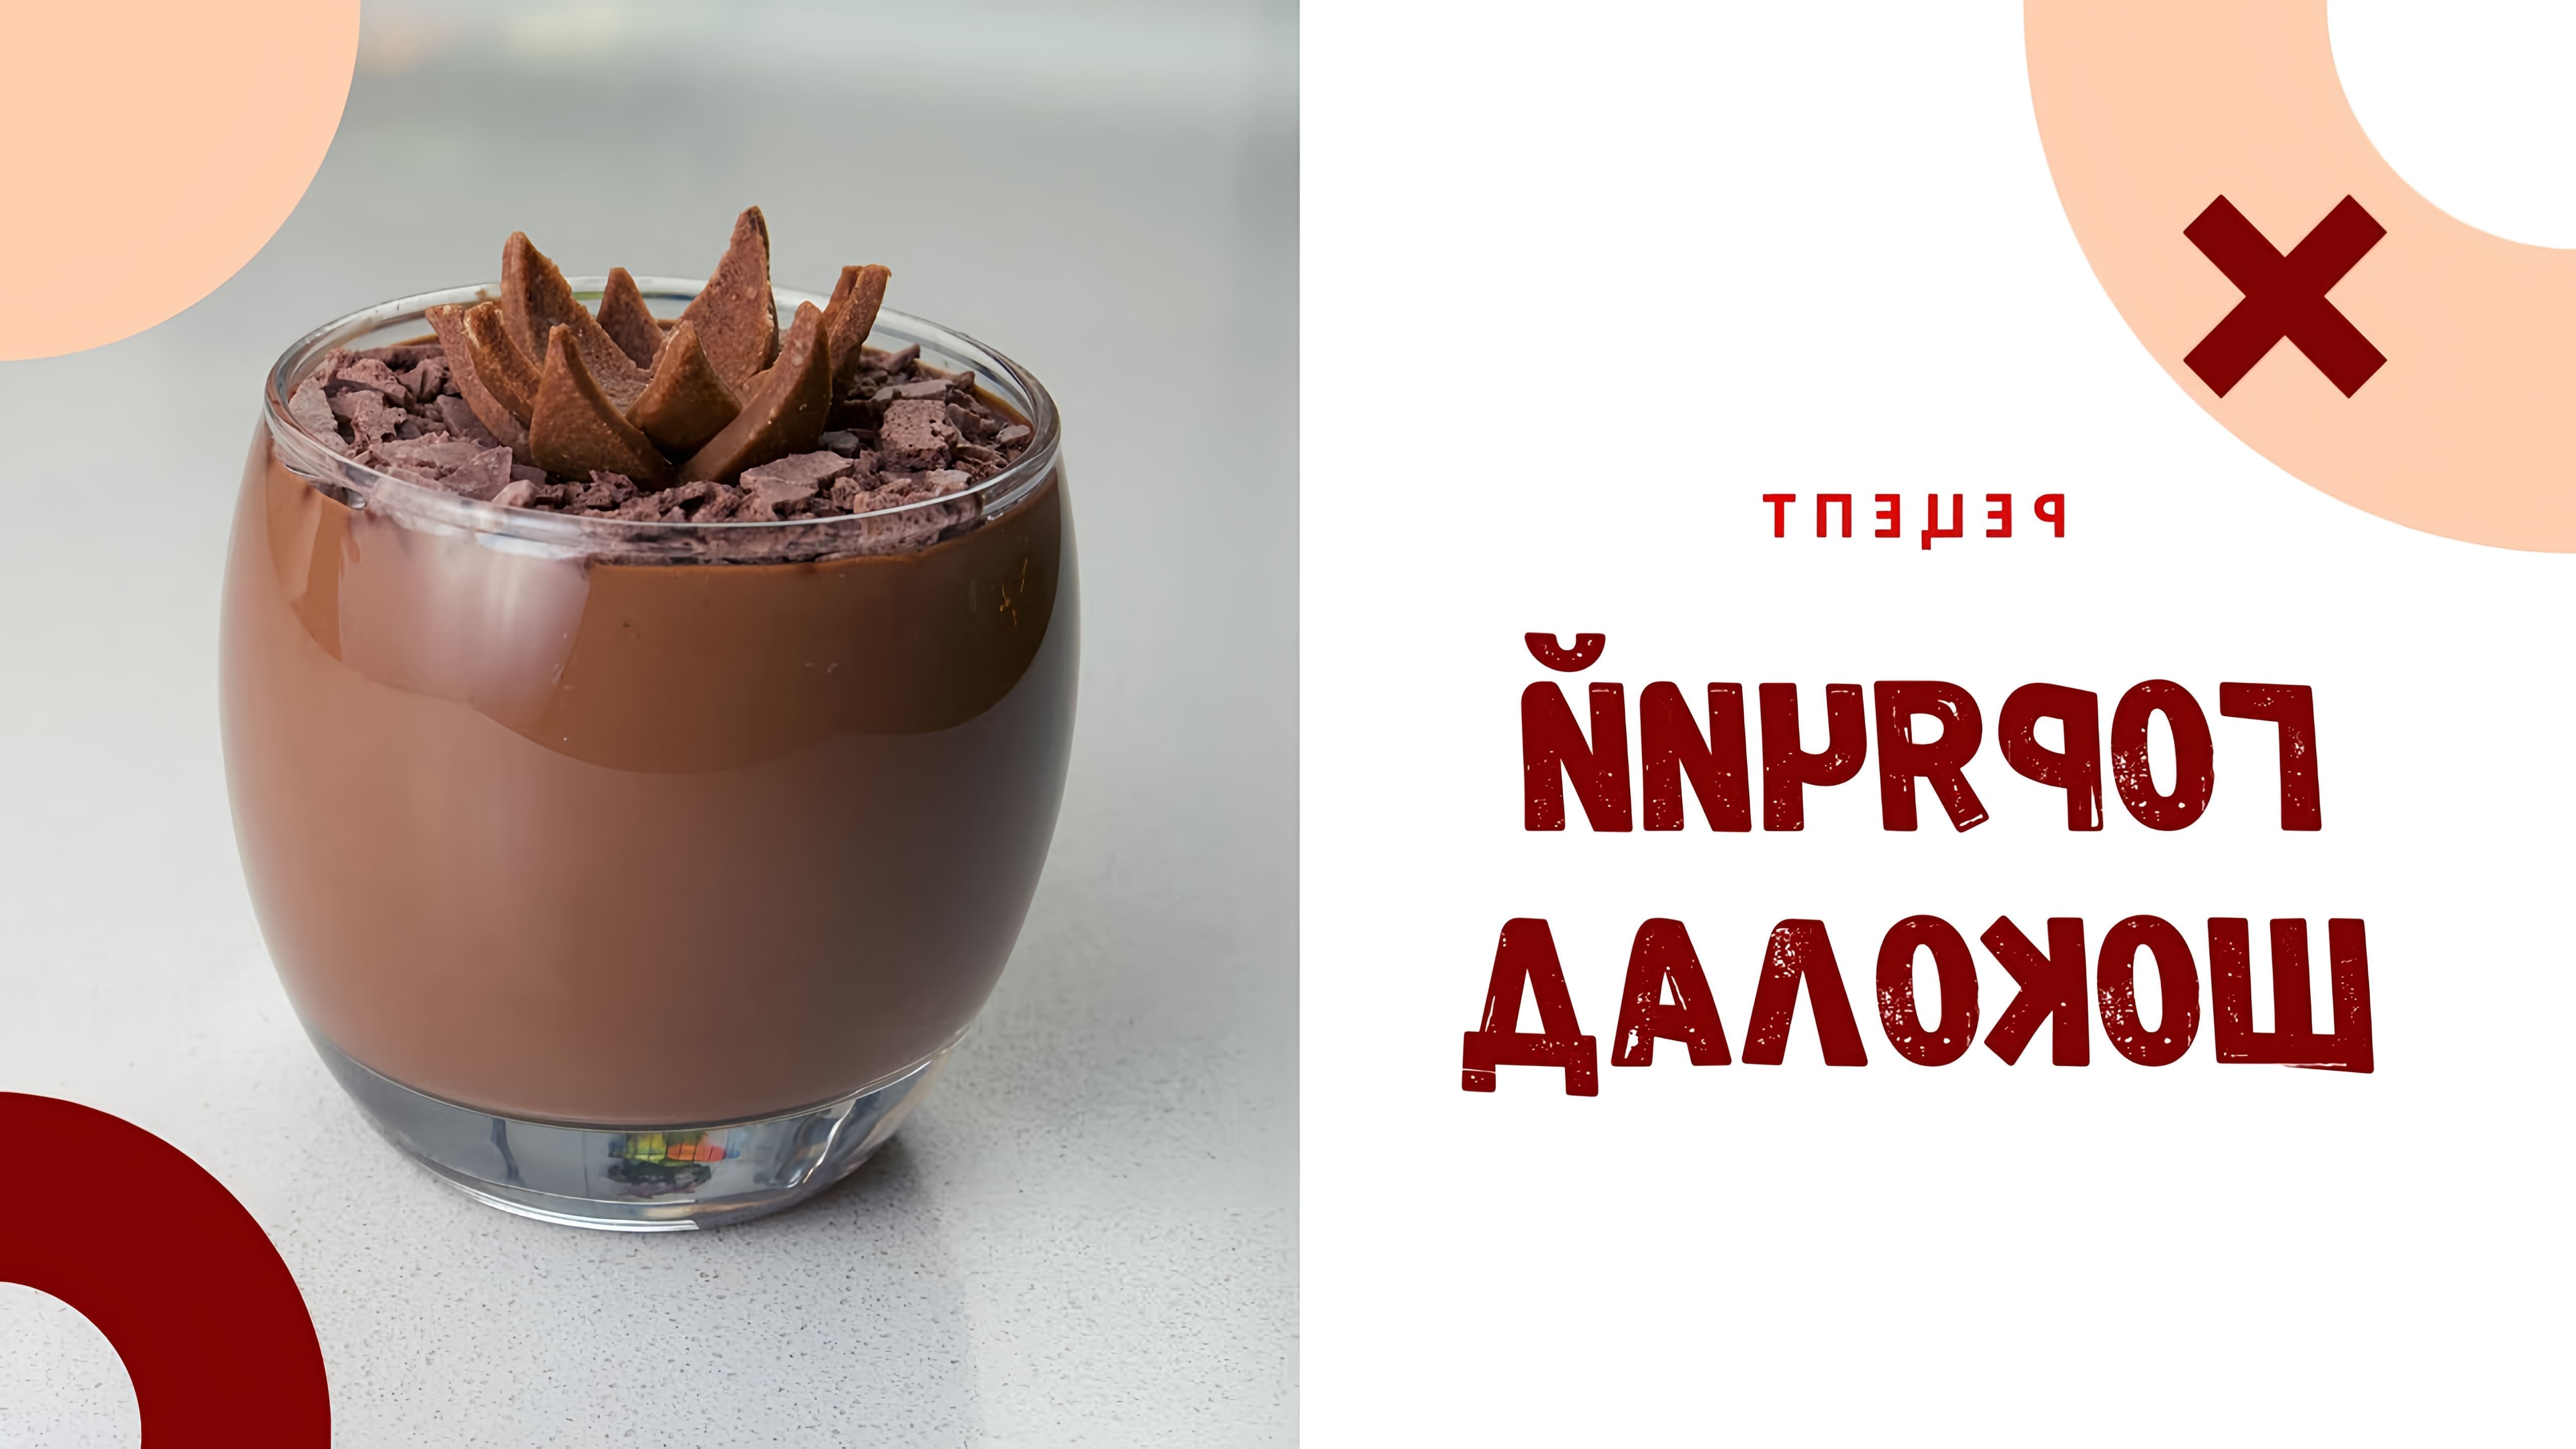 В этом видео-ролике #NataliaLompas делится своим рецептом идеального горячего шоколада, который можно приготовить всего за 5 минут